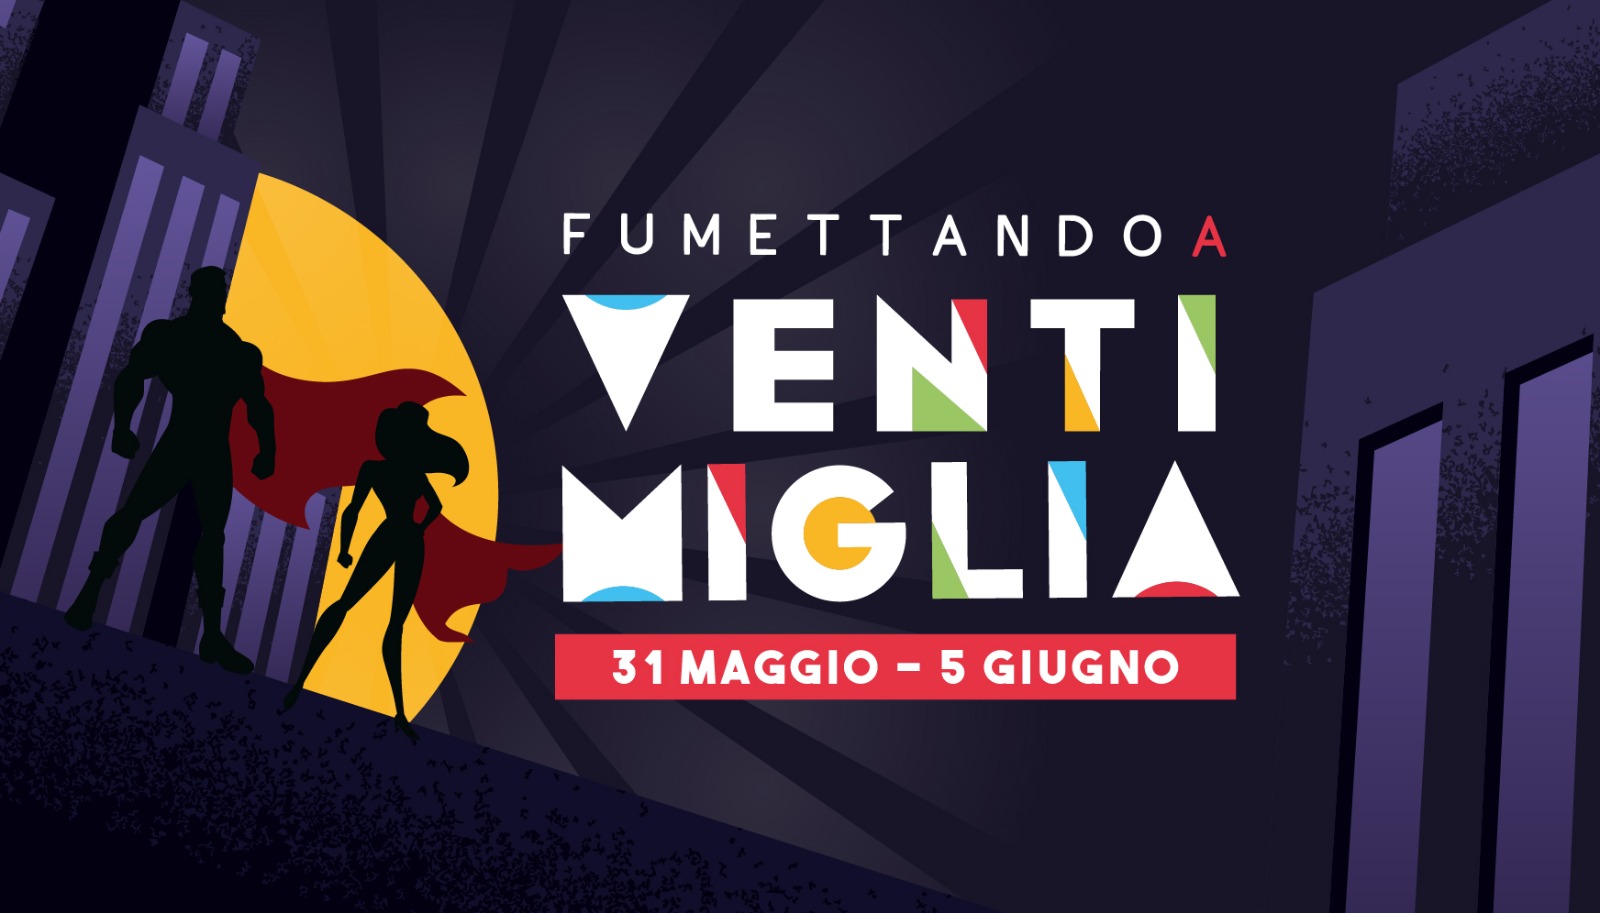 Fumettando A Ventimiglia: dal 31 maggio al 5 giugno 2022